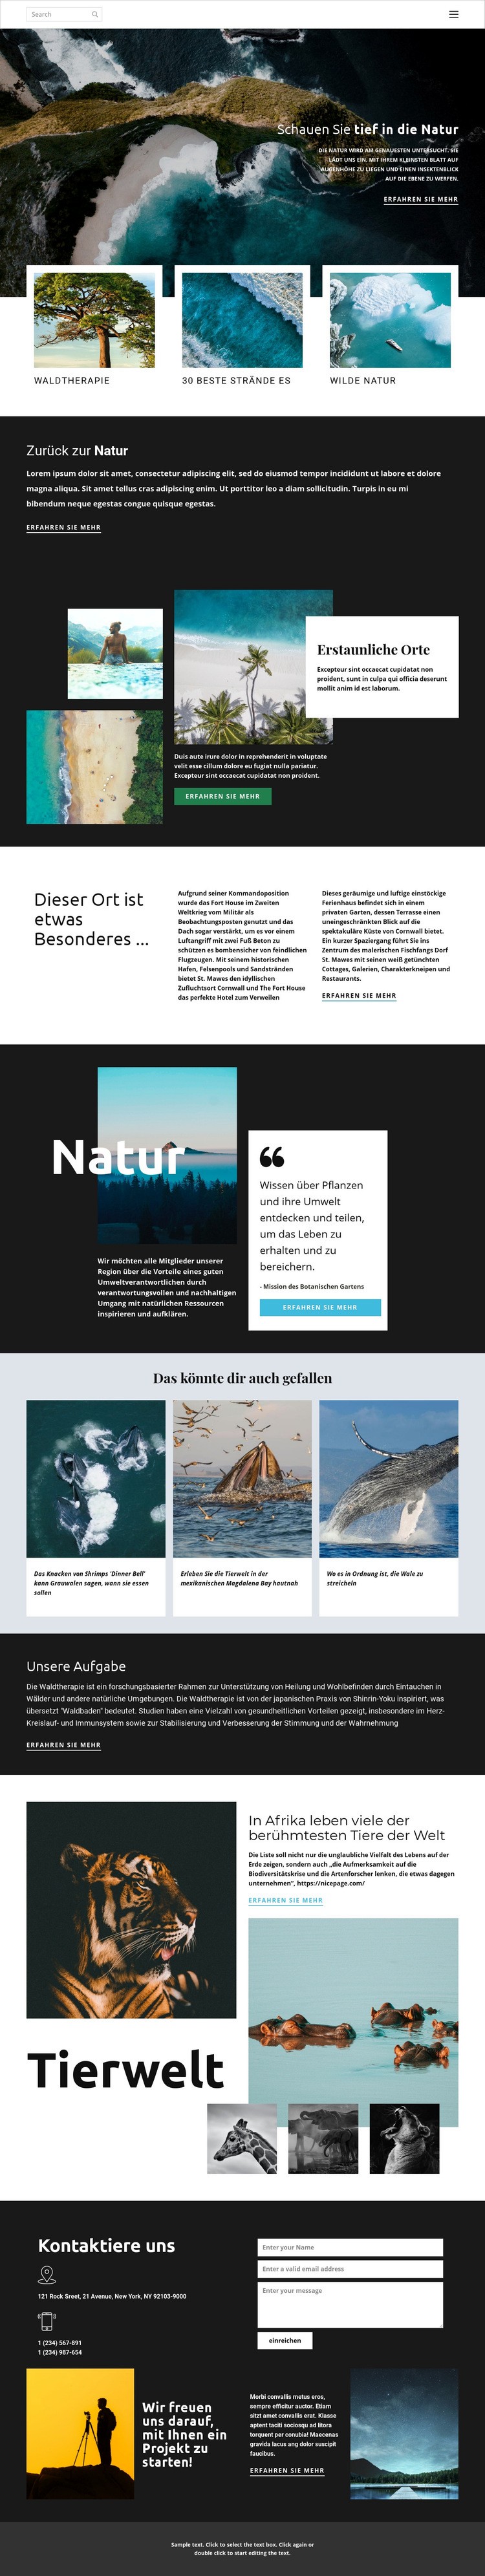 Erkundung von Wildtieren und Natur Website design